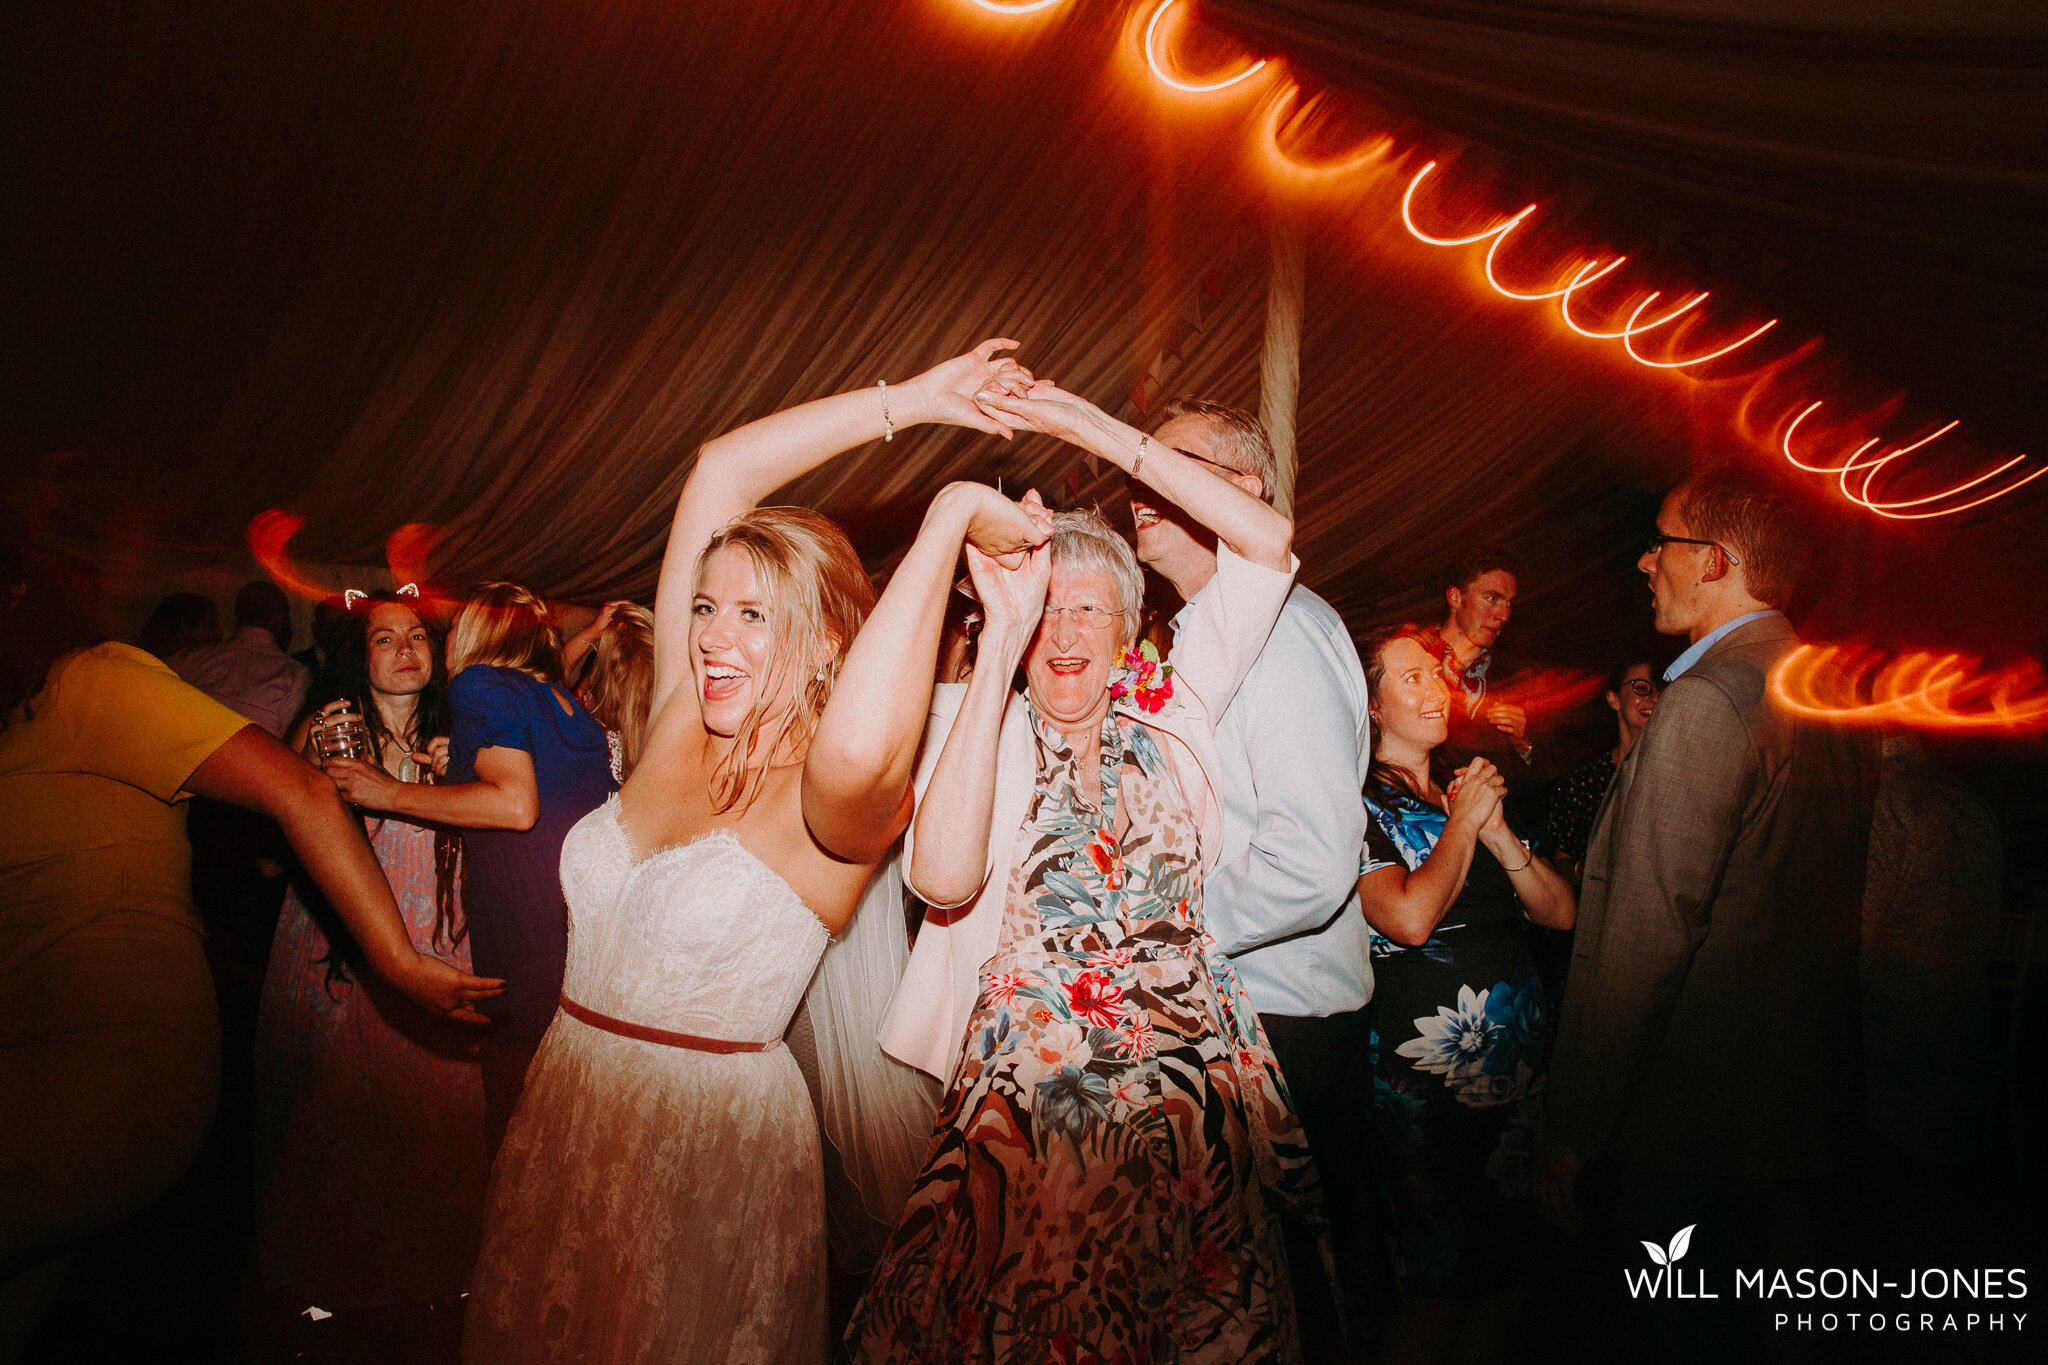  colourful energetic drunk funny swansea wedding photography dancefloor perriswood 